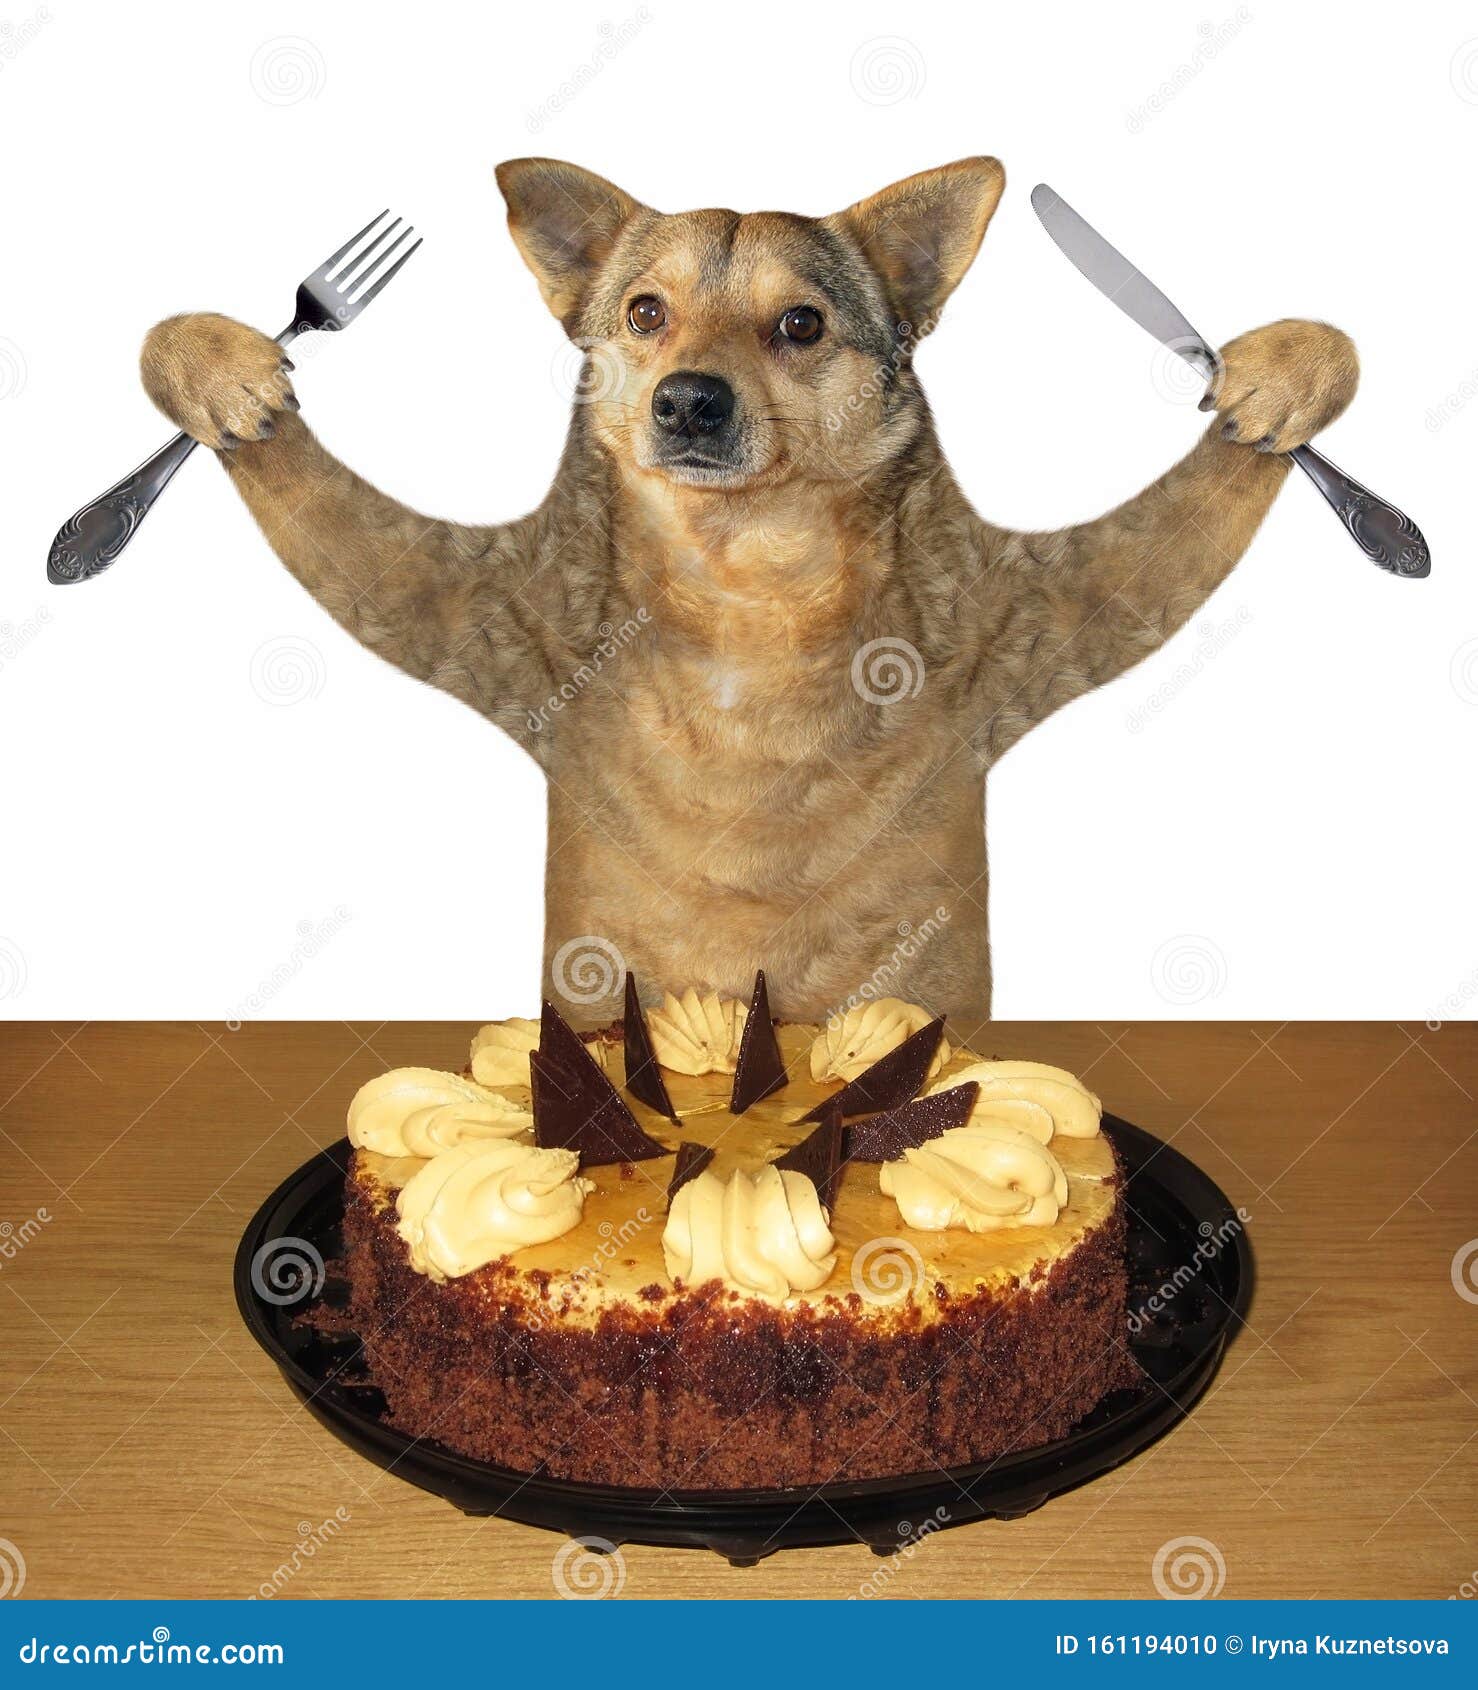 Собака съела рыбу. Тортик для собаки. Торт с собакой. Смешной торт с собакой. Собака ест торт.